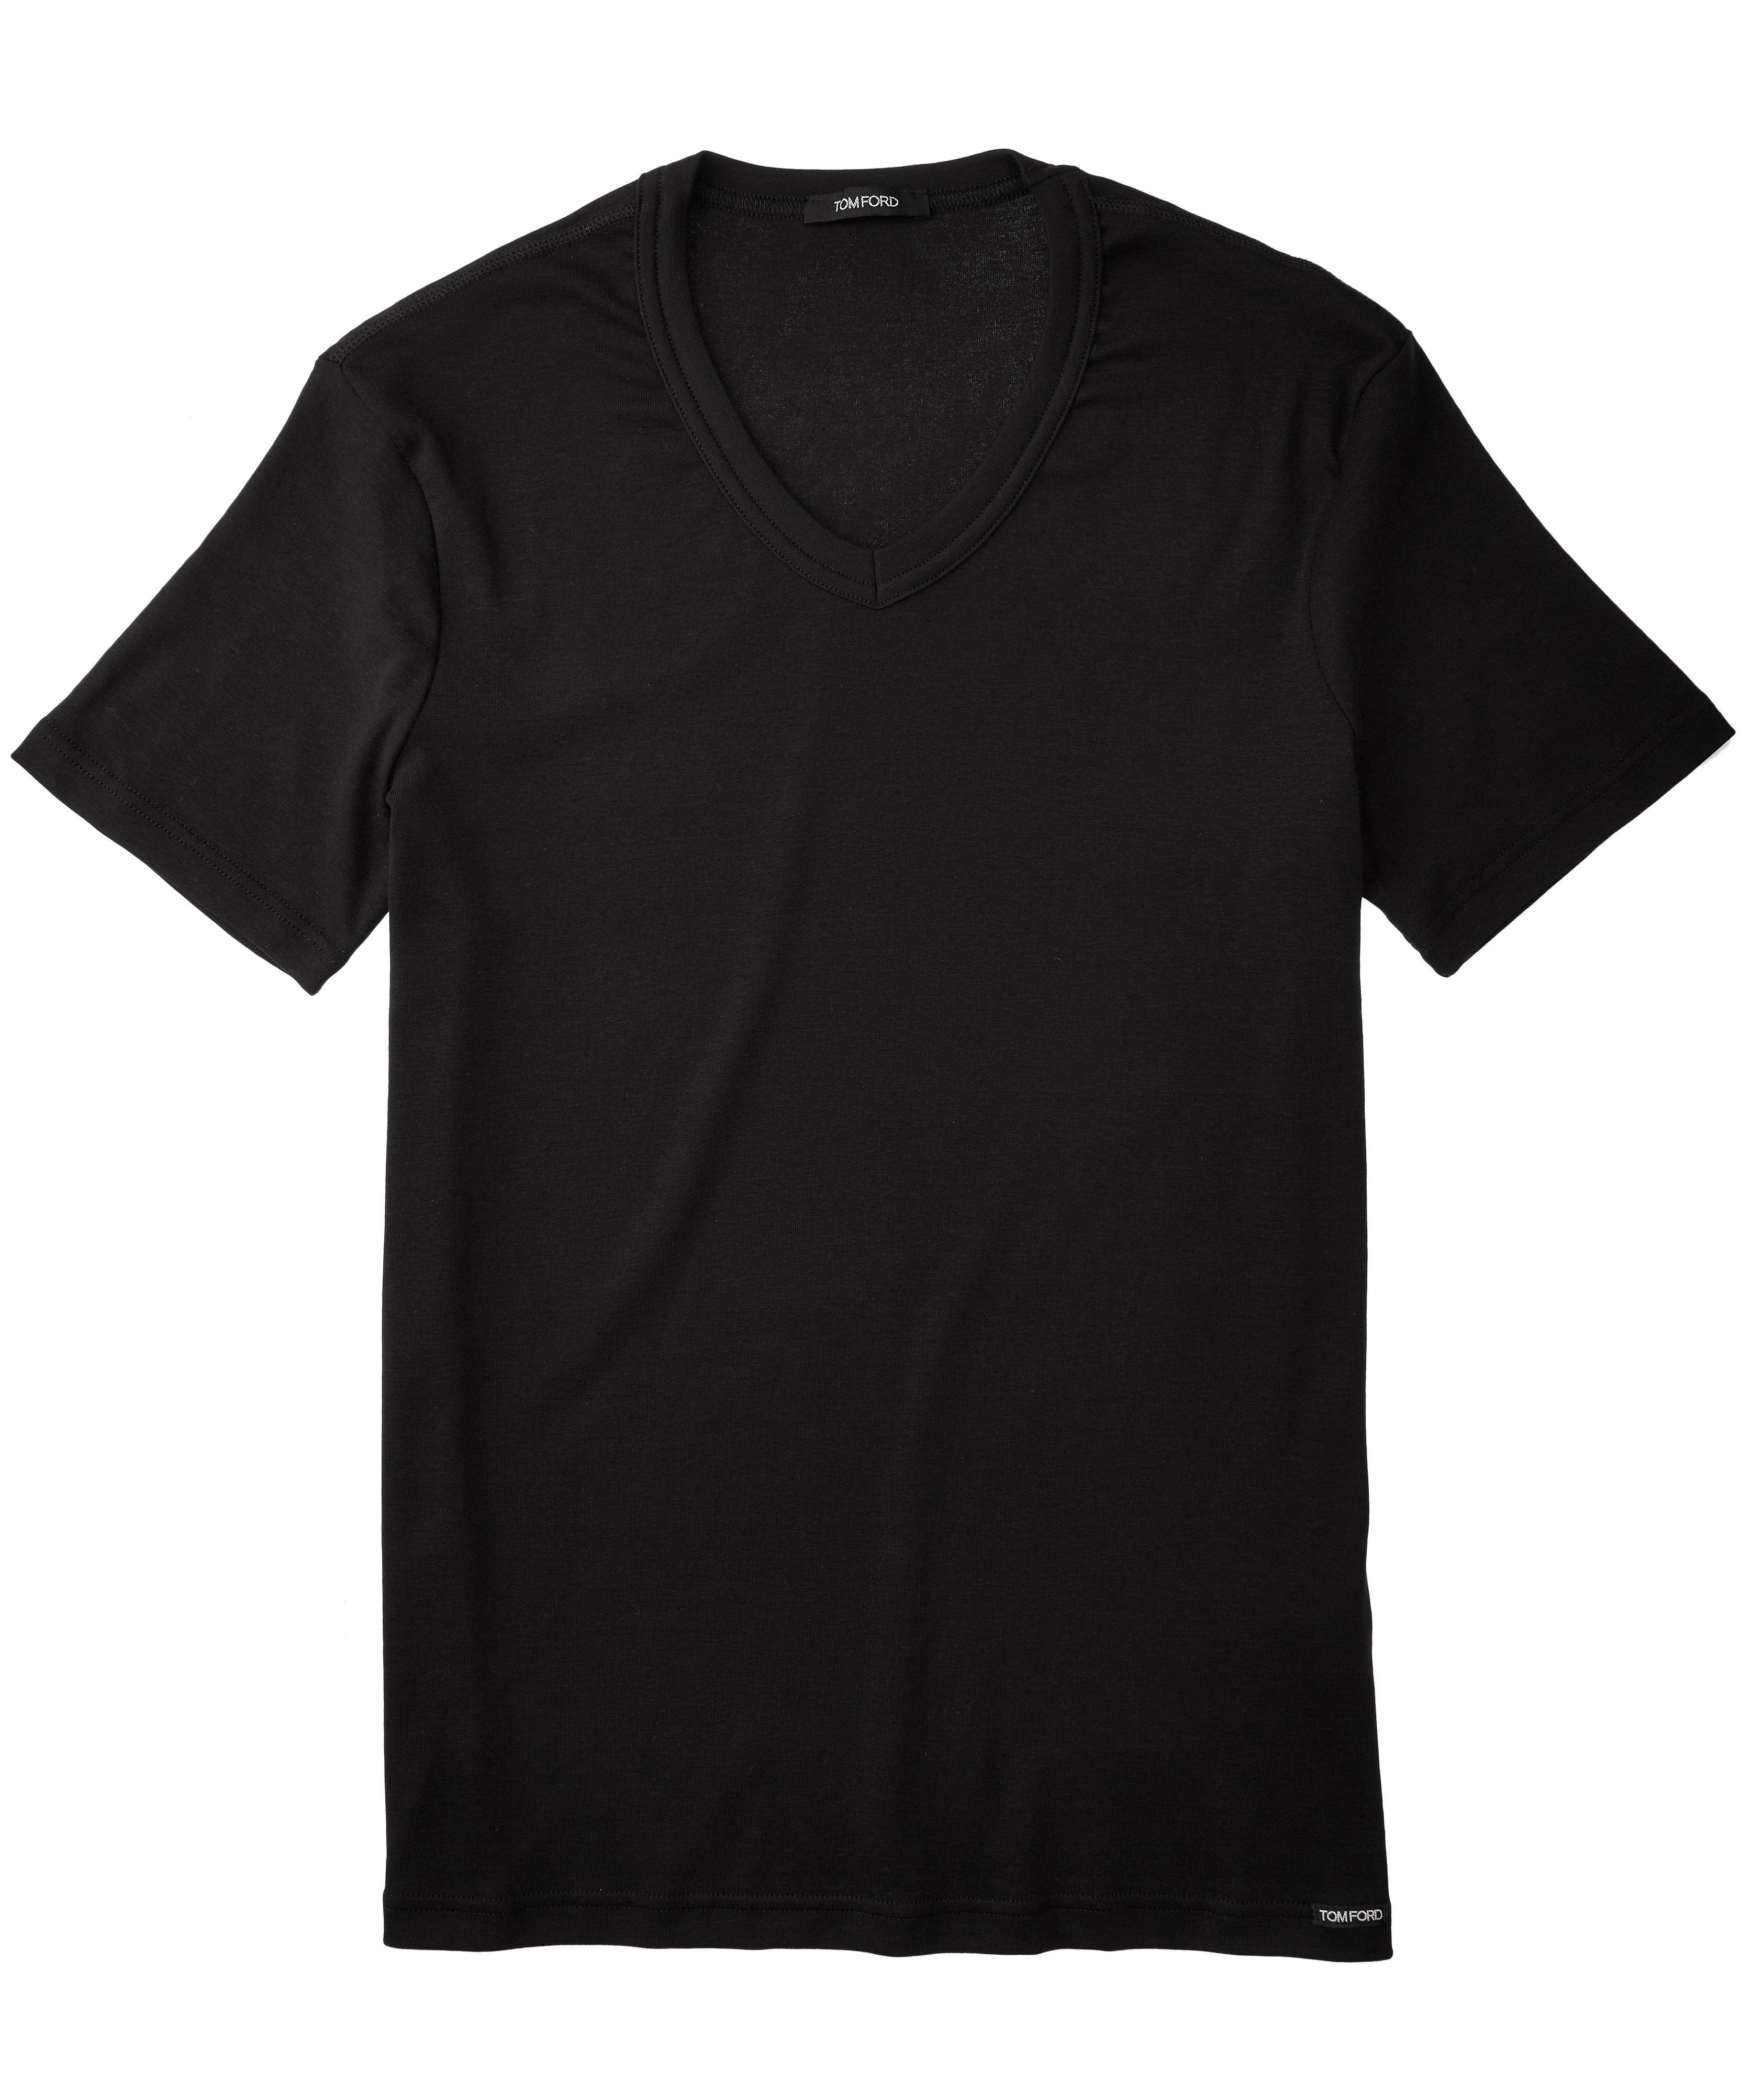 T-shirt en jersey de coton extensible à encolure en V image 0